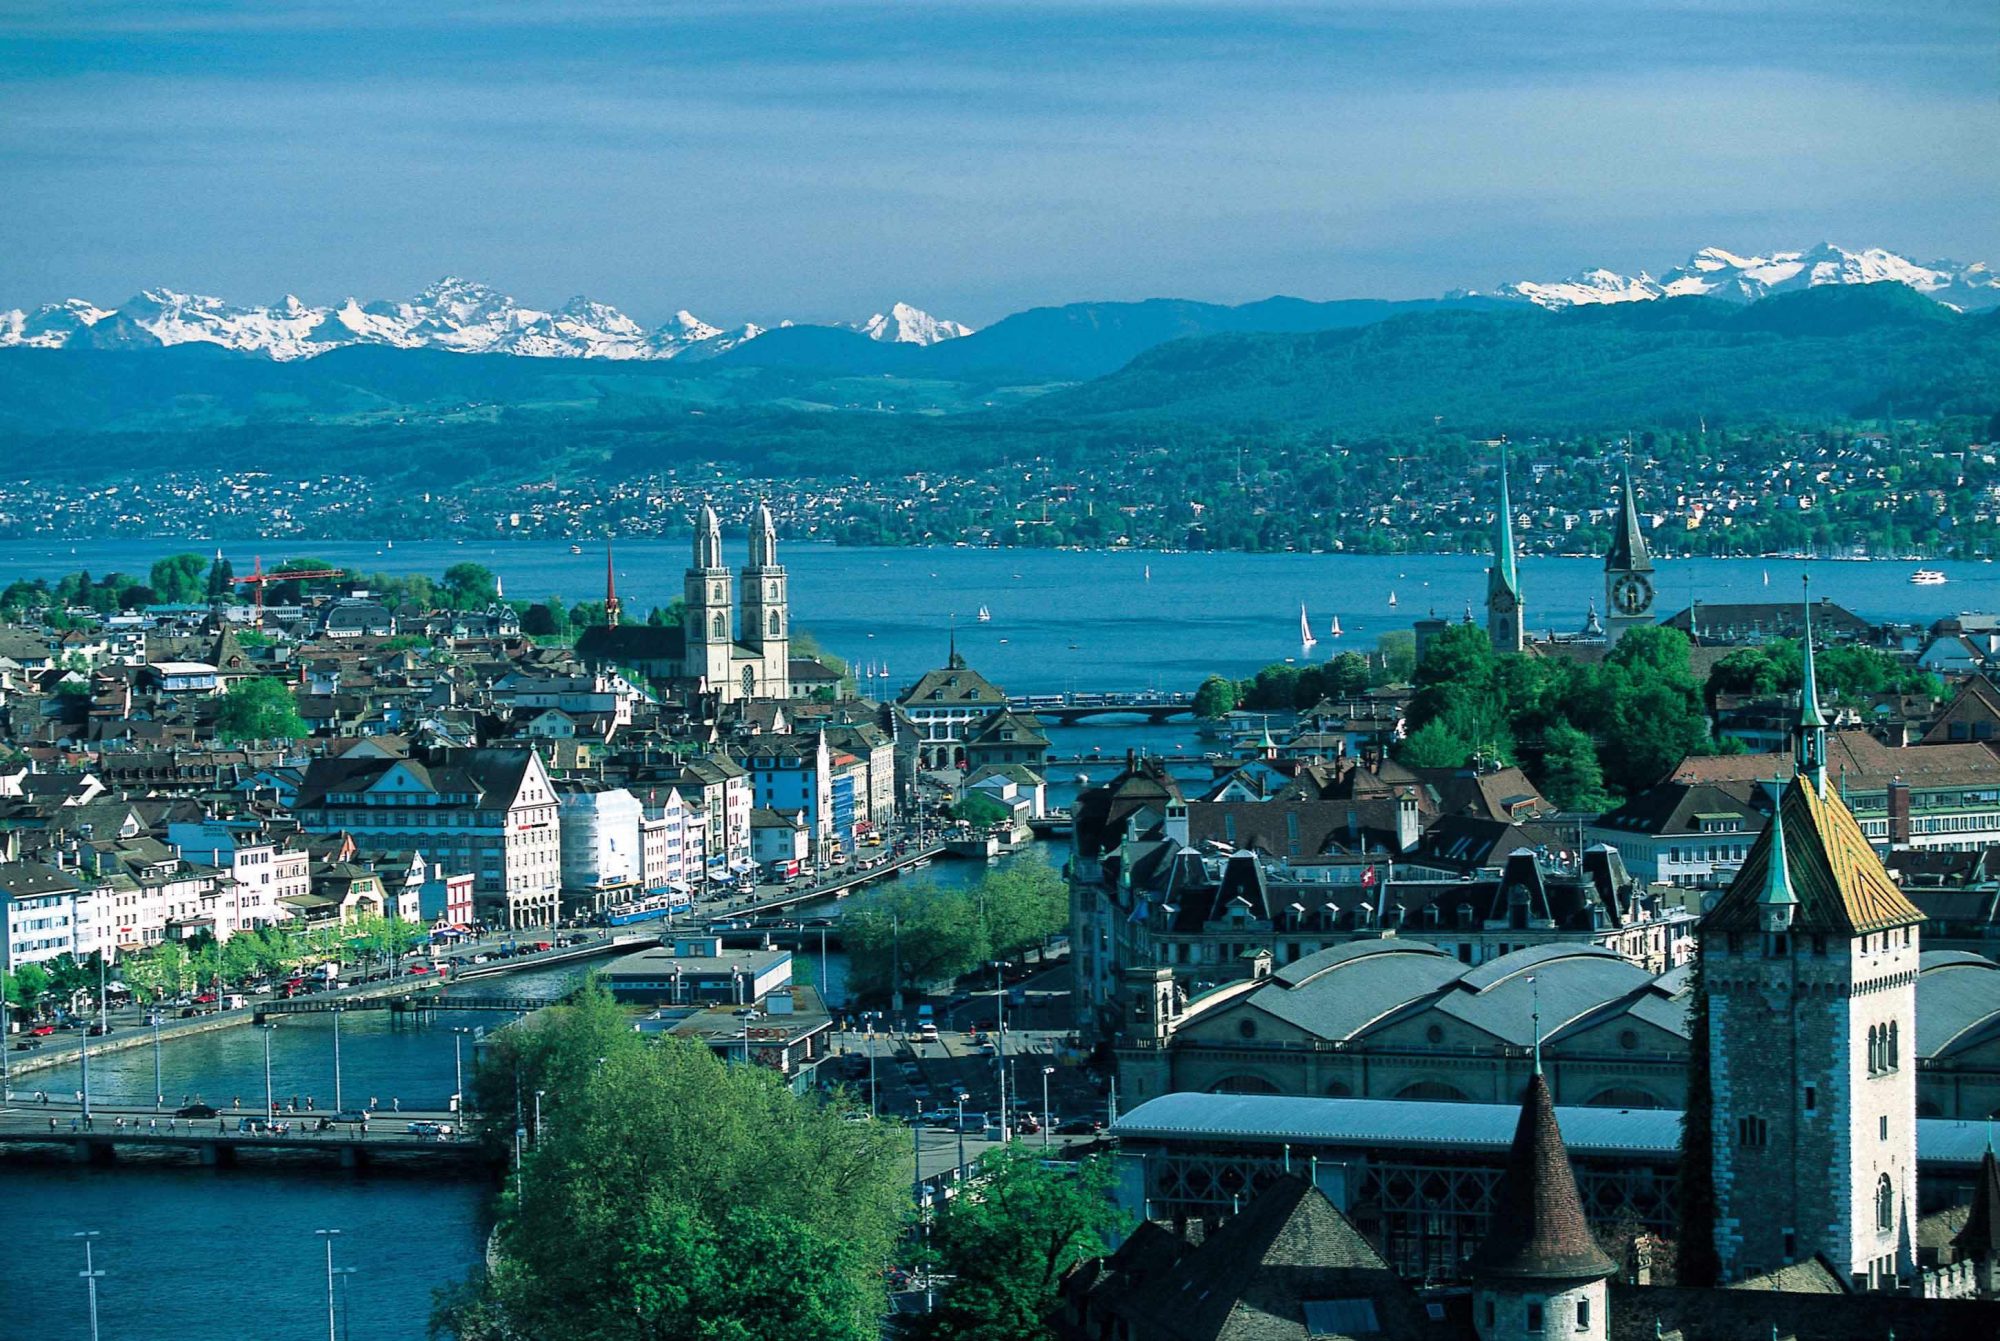 Die Sprachschule Schneider liegt in unmittelbarer Nähe des Zürichsees. Bild: Zurich-Wallpapers